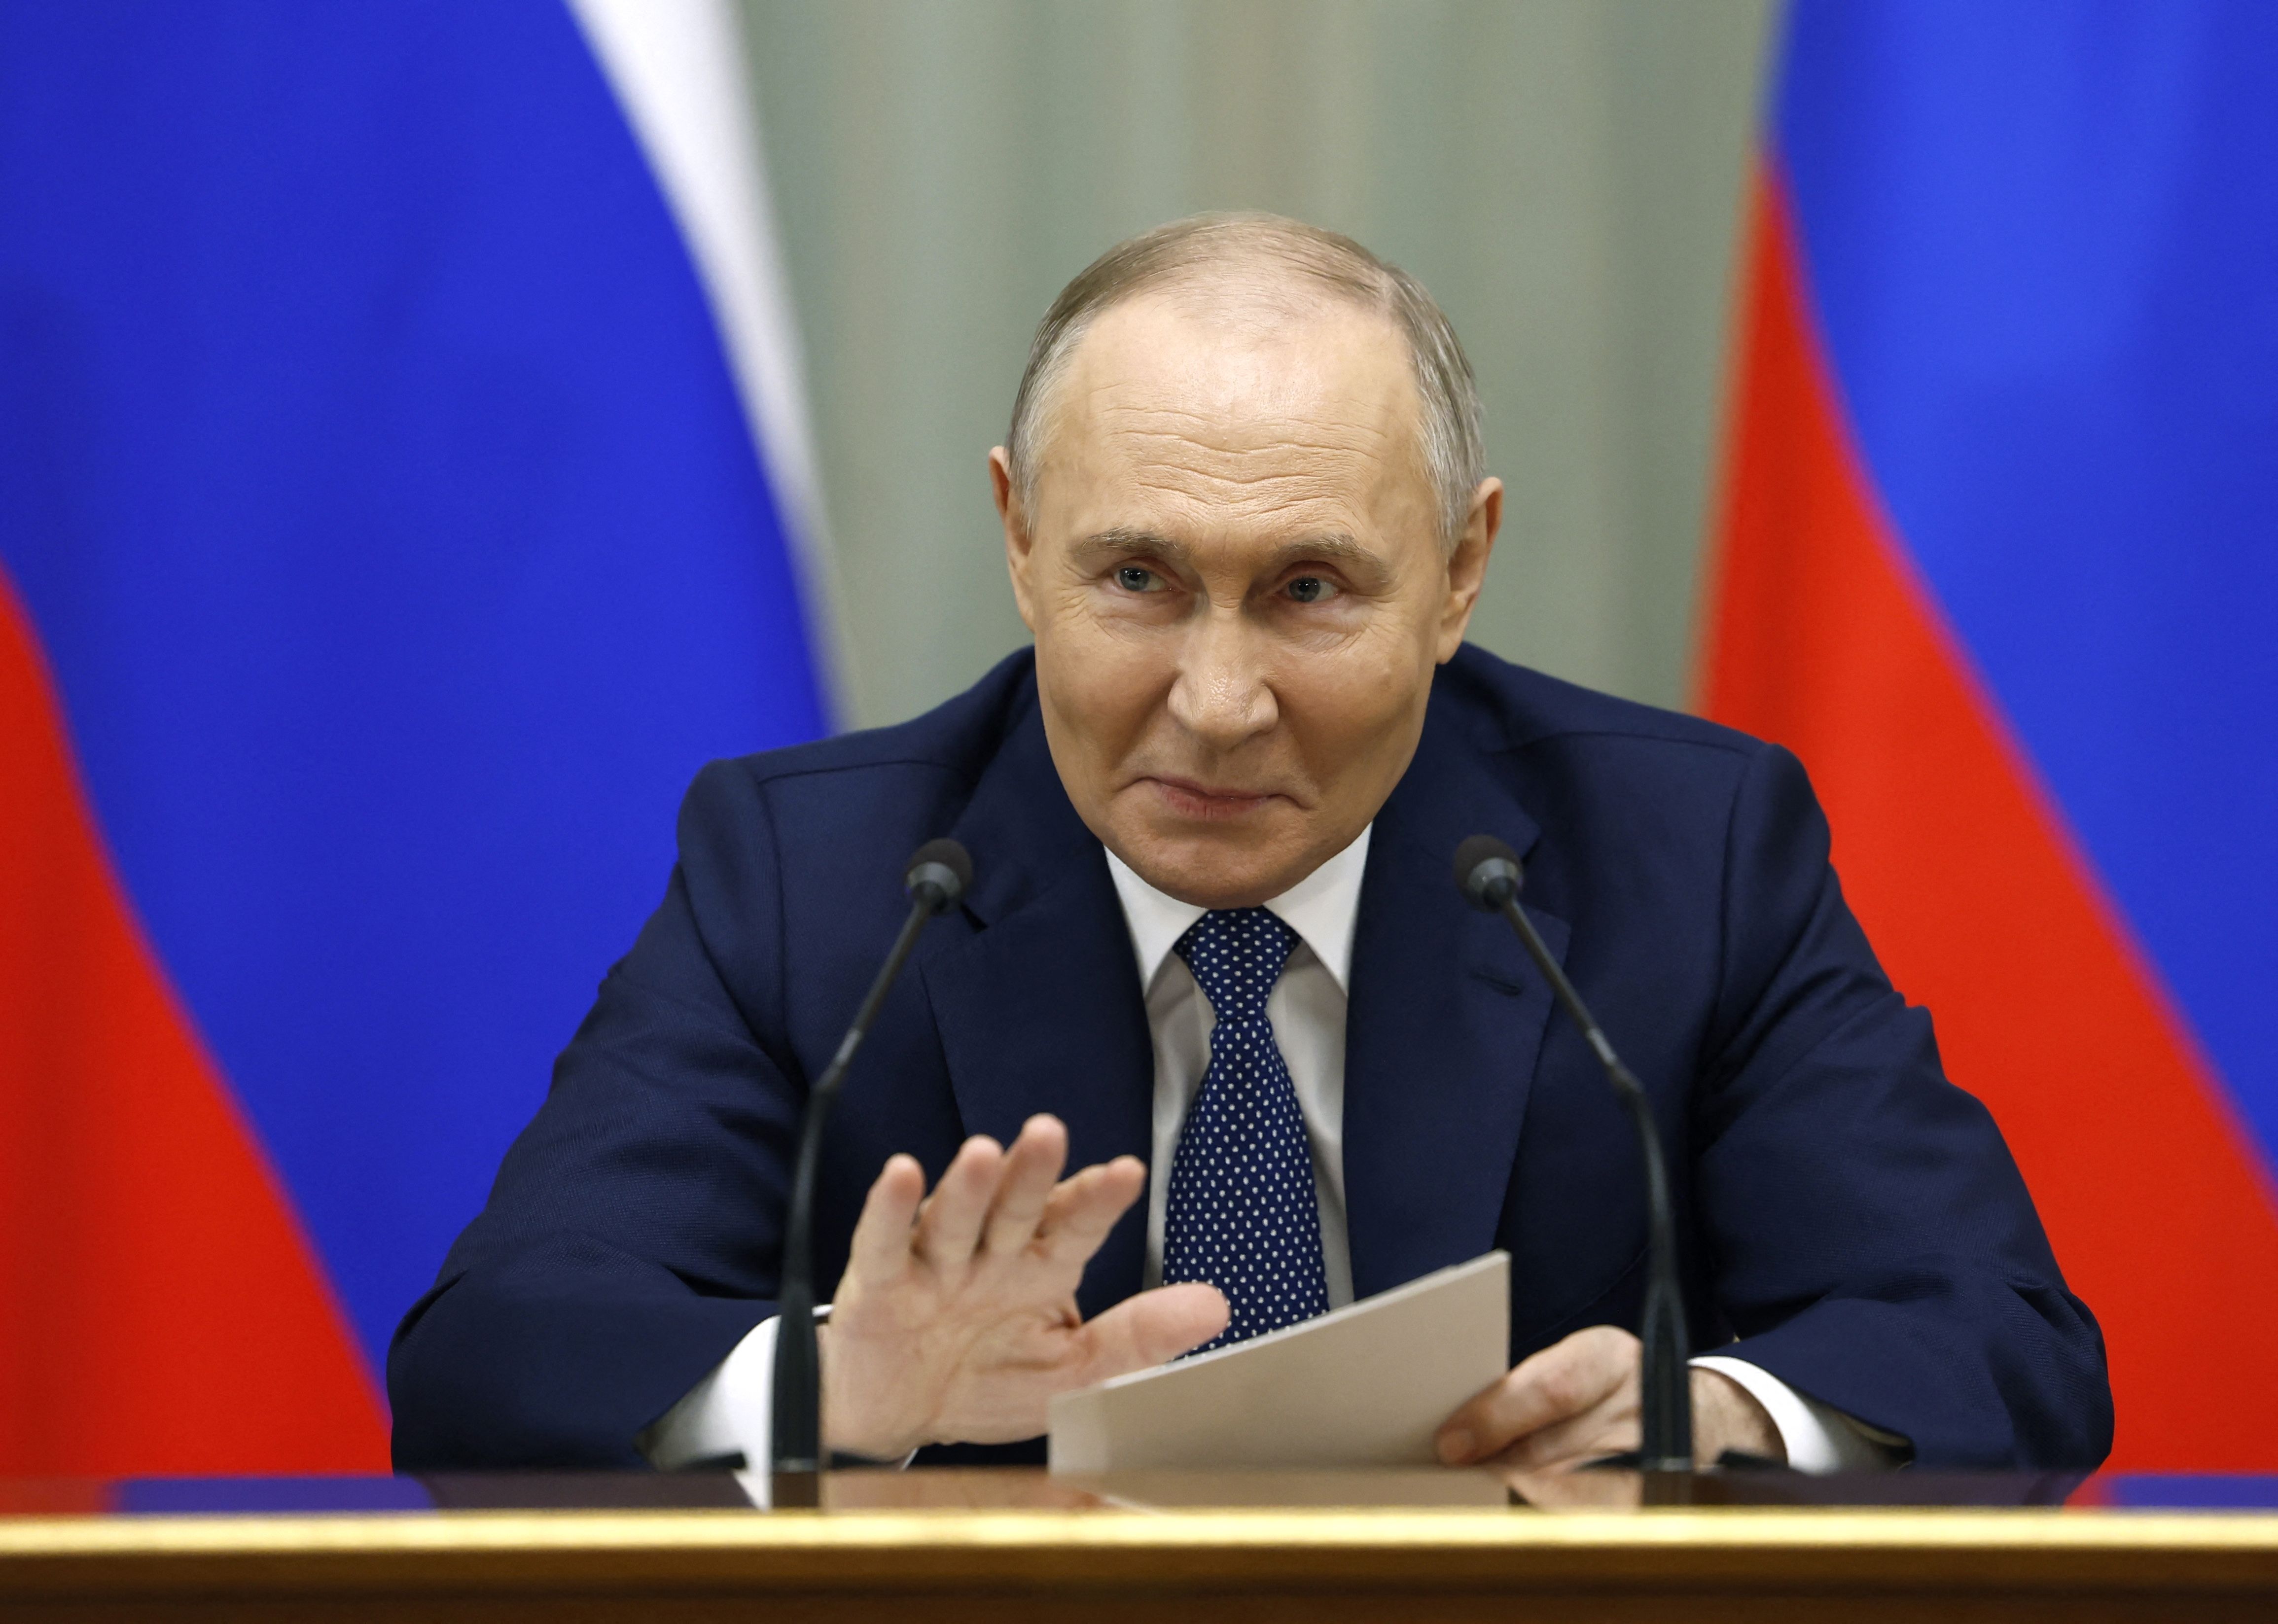 5. Angelobung: Putin regiert weitere 6 Jahre